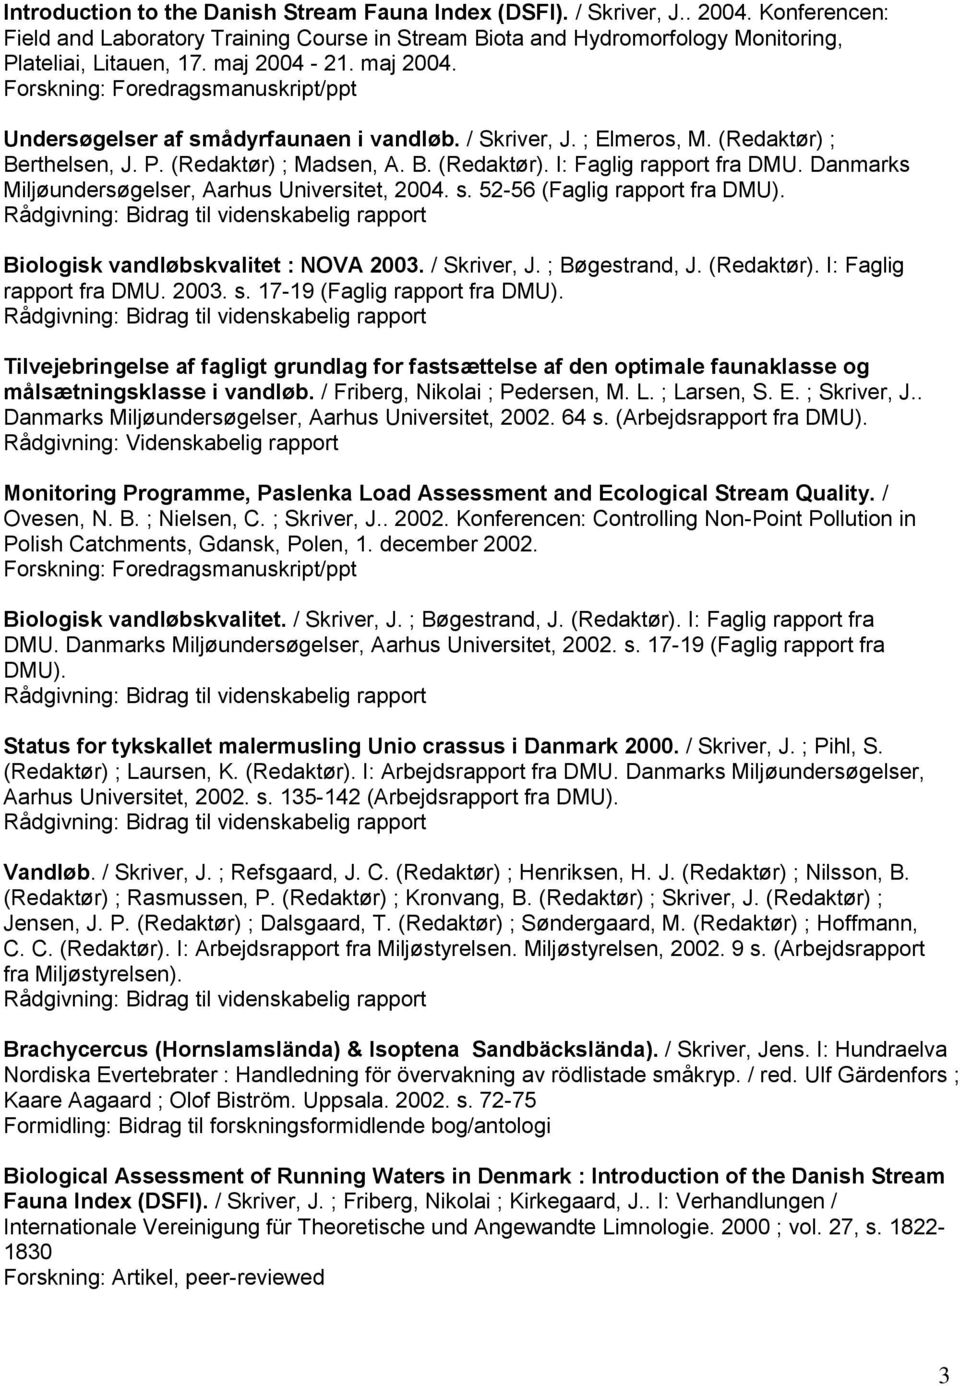 Danmarks Miljøundersøgelser, Aarhus Universitet, 2004. s. 52-56 (Faglig rapport fra DMU). Biologisk vandløbskvalitet : NOVA 2003. / Skriver, J. ; Bøgestrand, J. (Redaktør). I: Faglig rapport fra DMU.